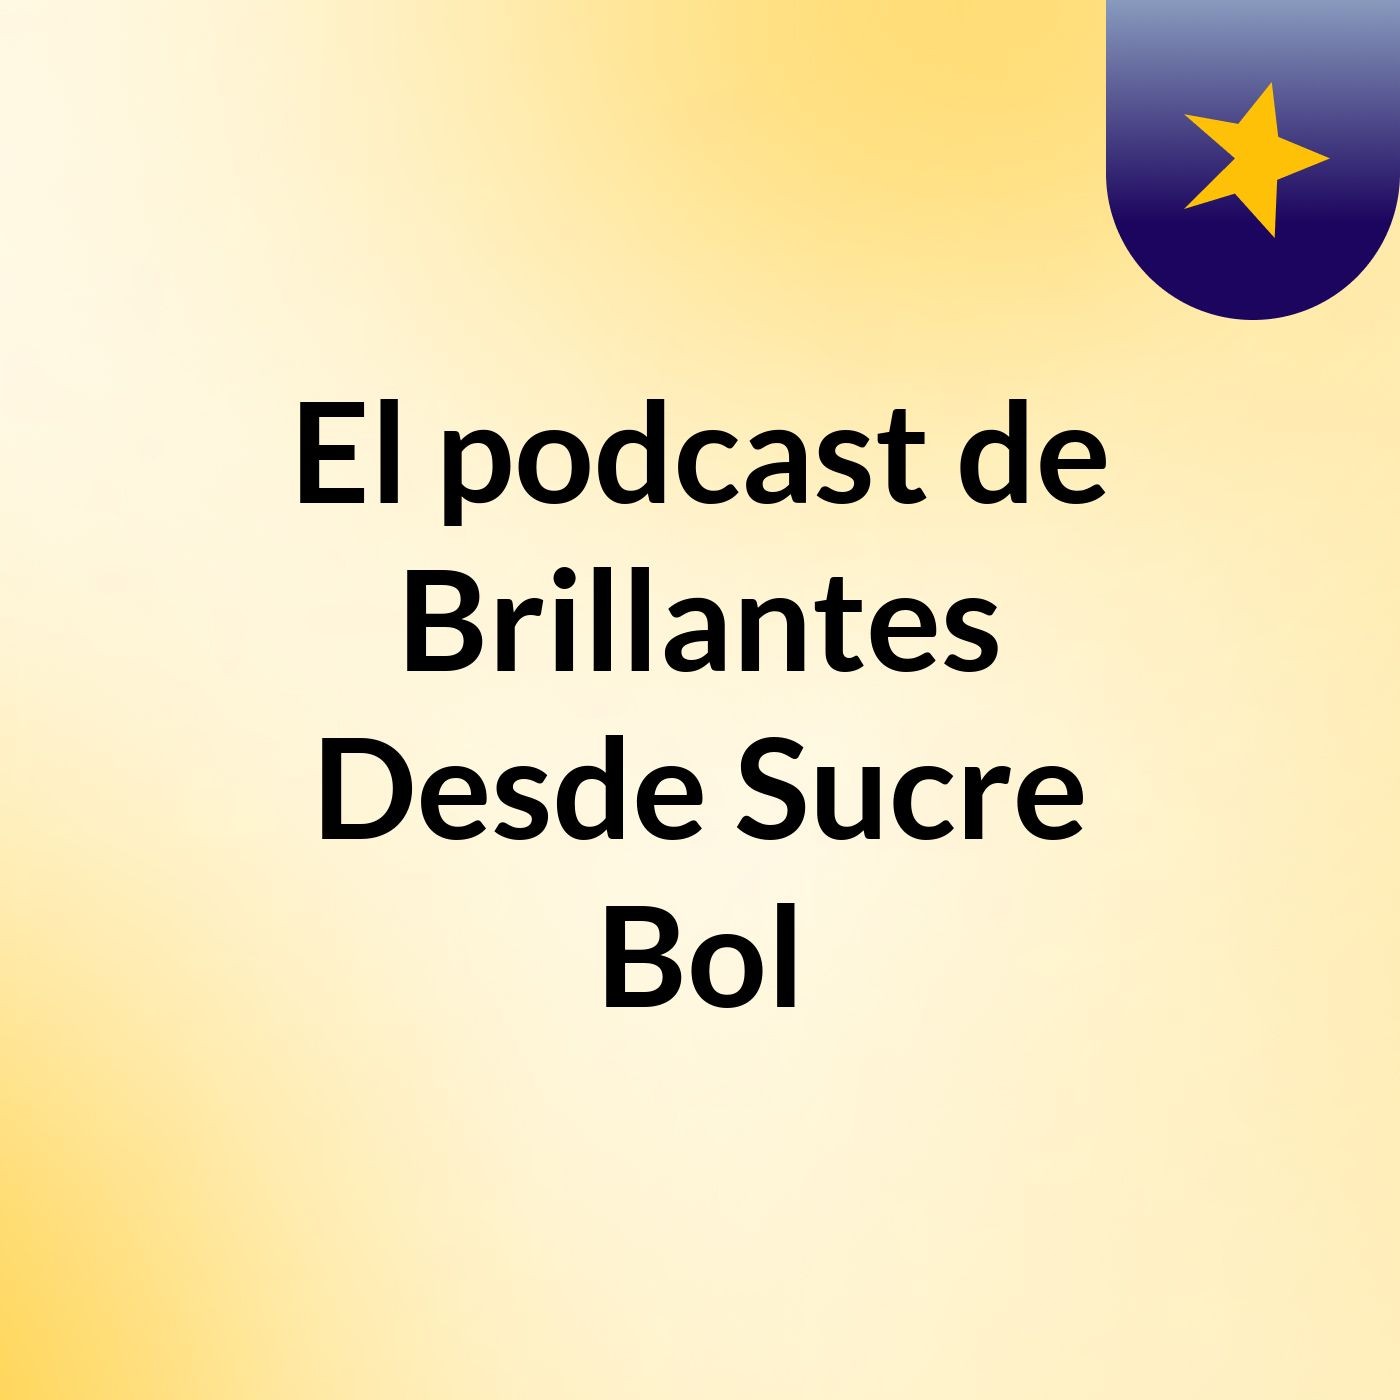 El podcast de Brillantes Desde Sucre Bol